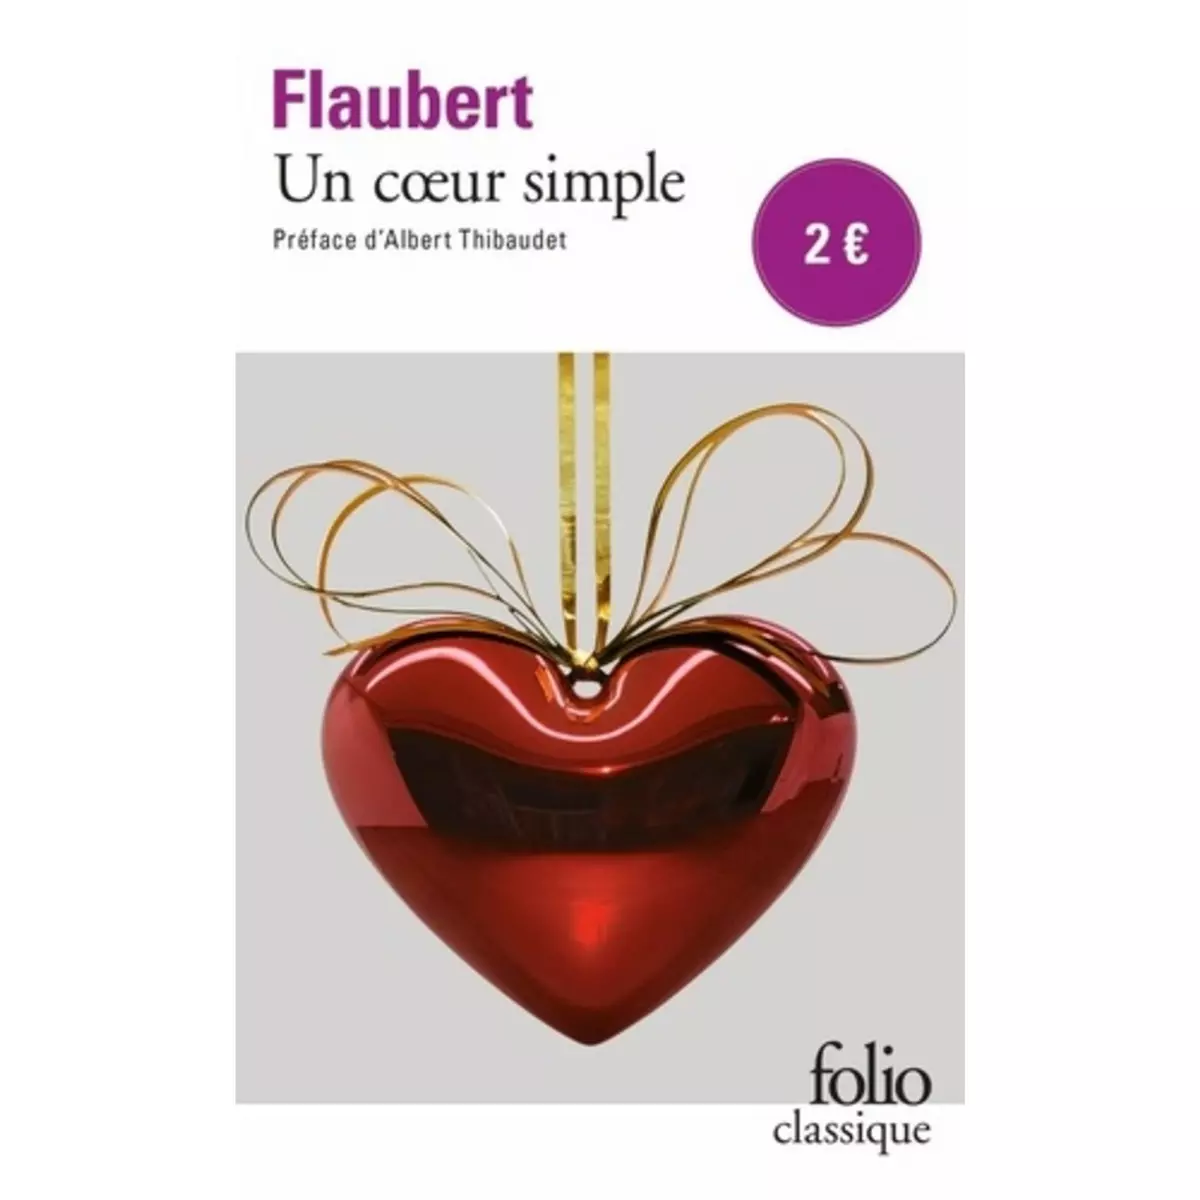  UN COEUR SIMPLE, Flaubert Gustave